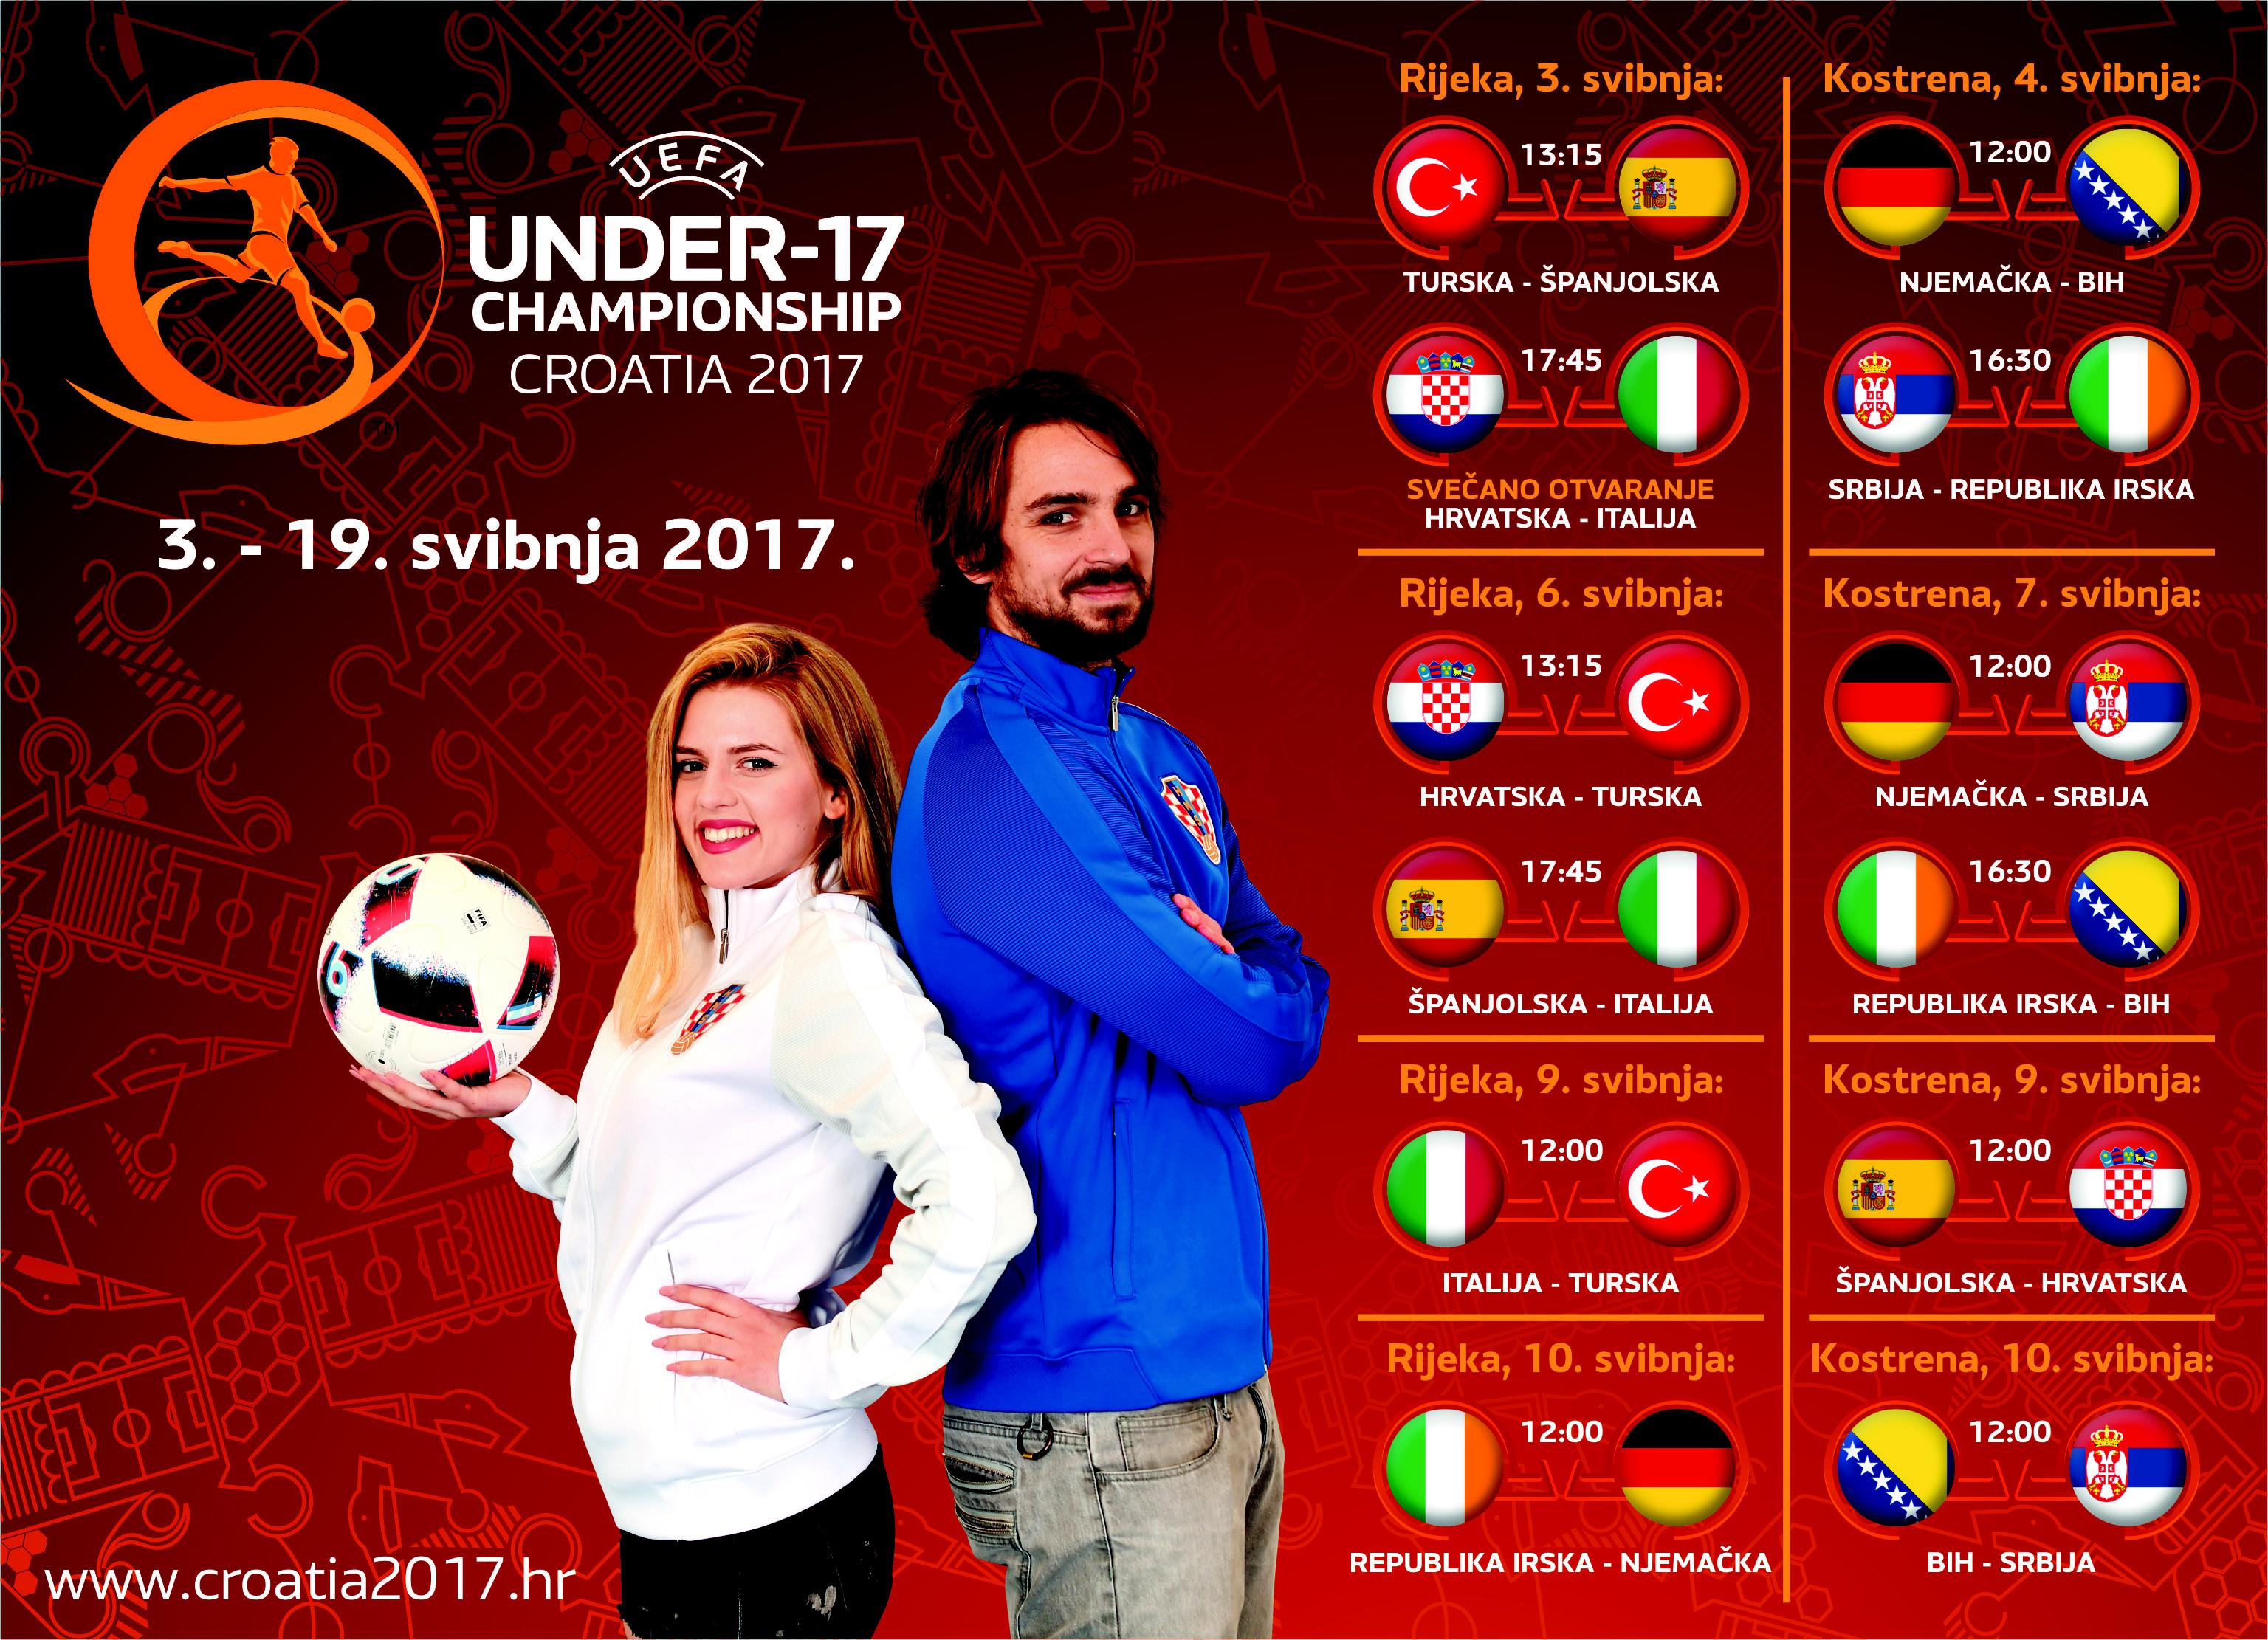 Raspored utakmica UEFA U-17 Kostrena